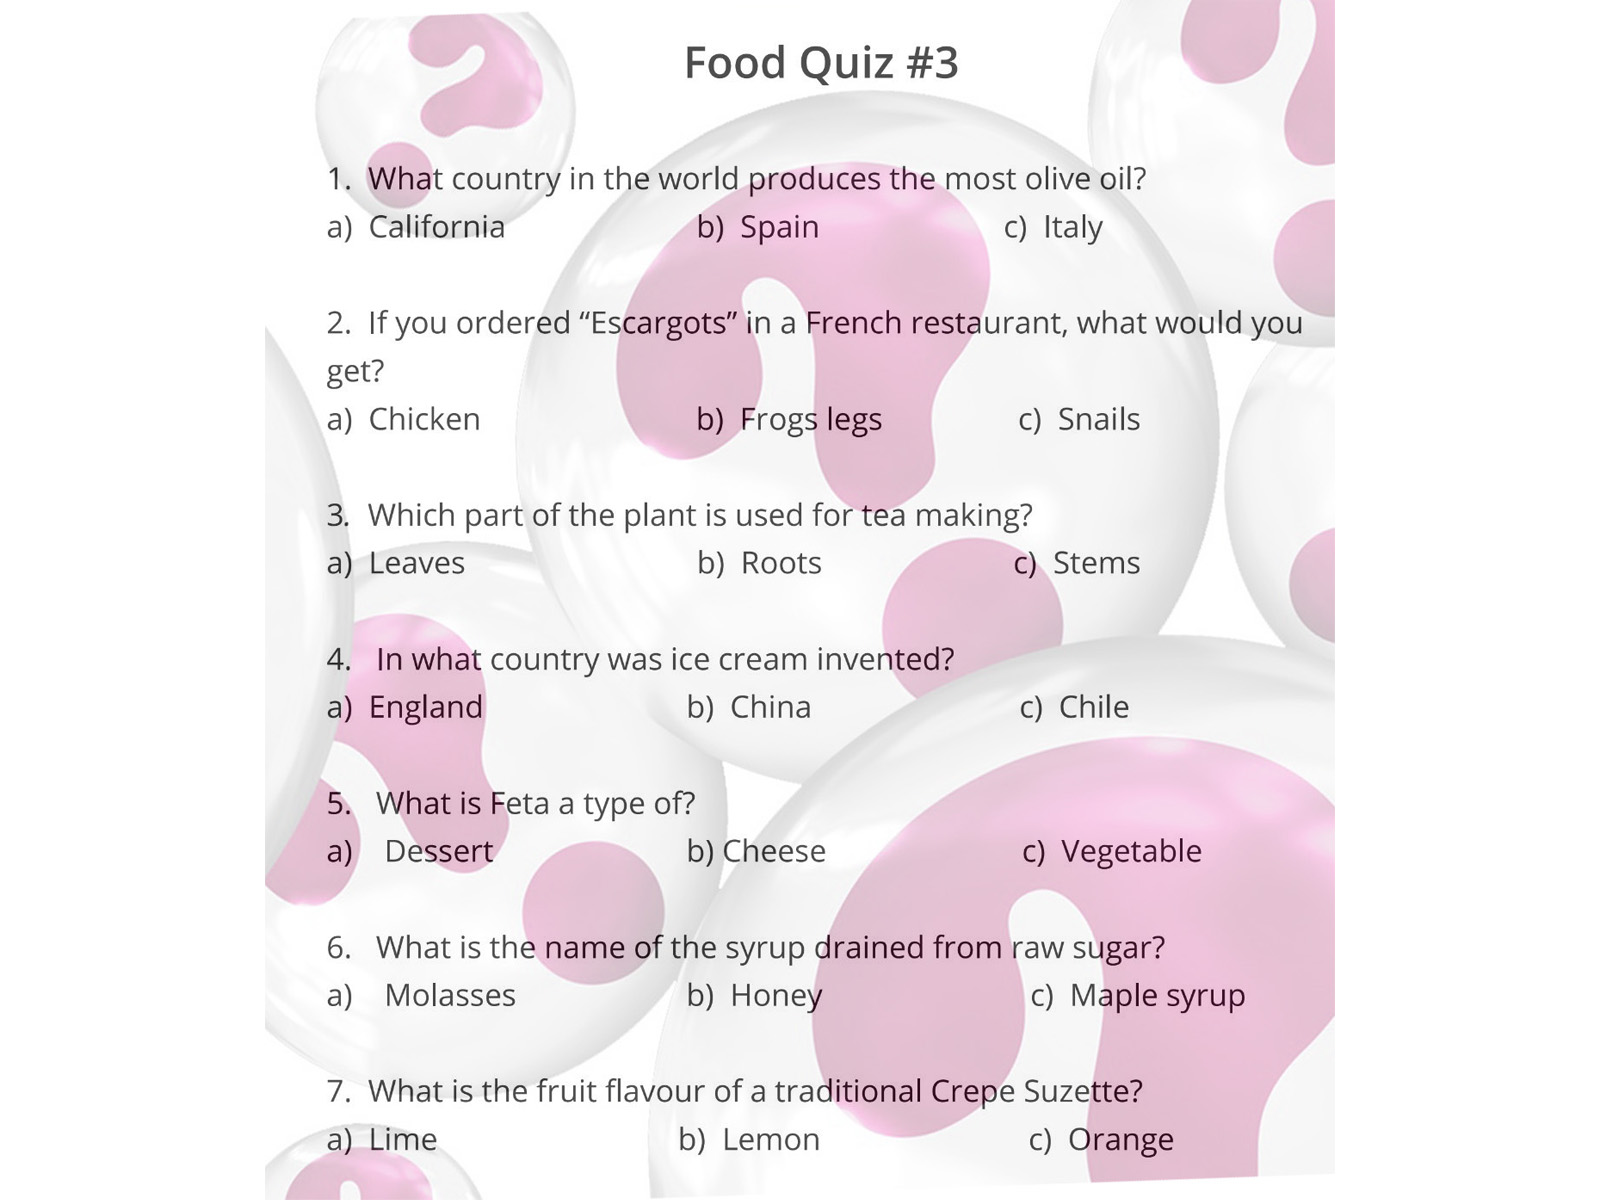 Food quiz